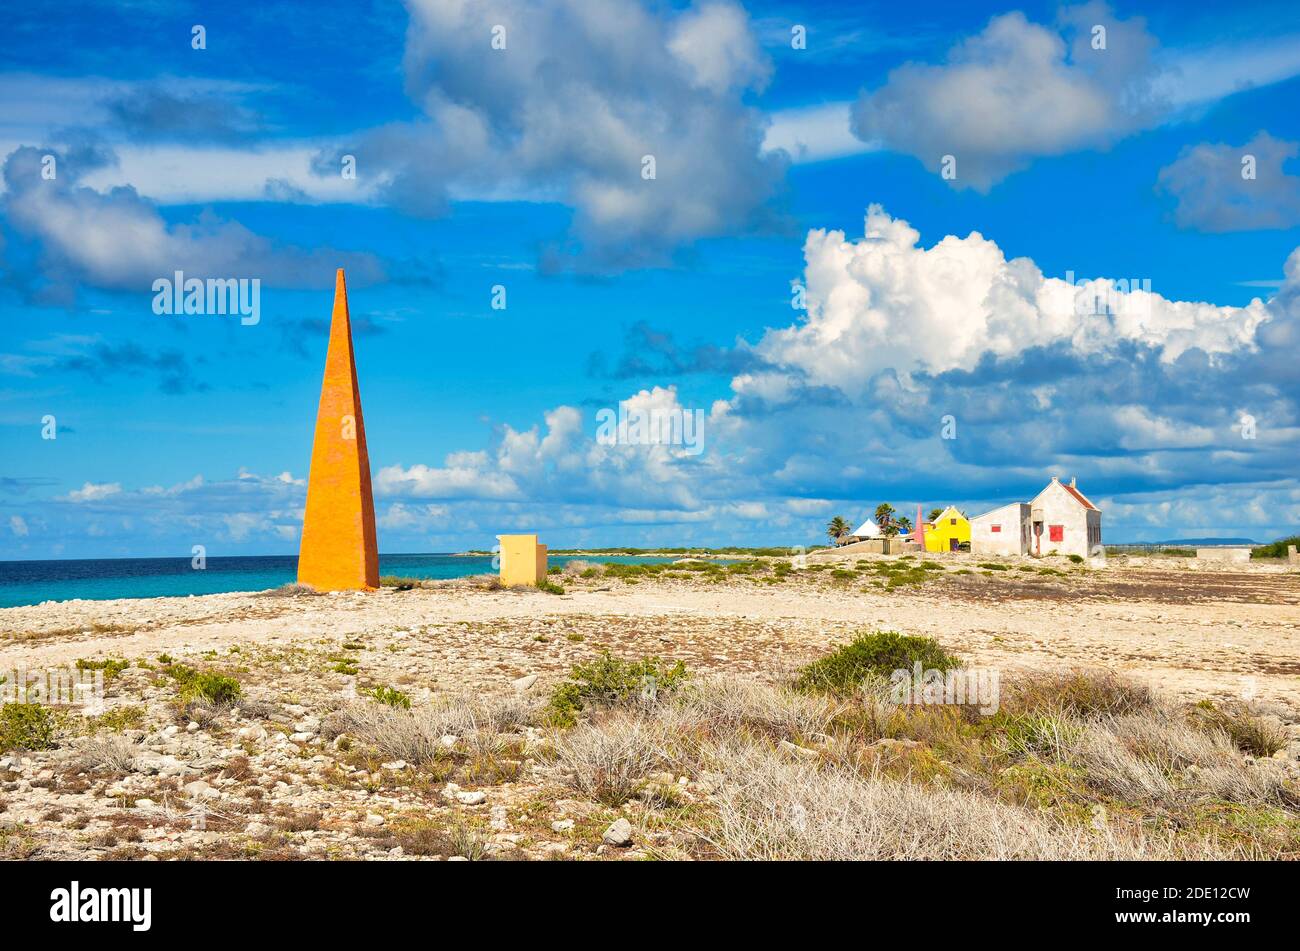 Torre degli schiavi sulla spiaggia dell'isola caraibica di Bonaire, Isola delle Antille Olandesi, Storia della schiavitù Foto Stock